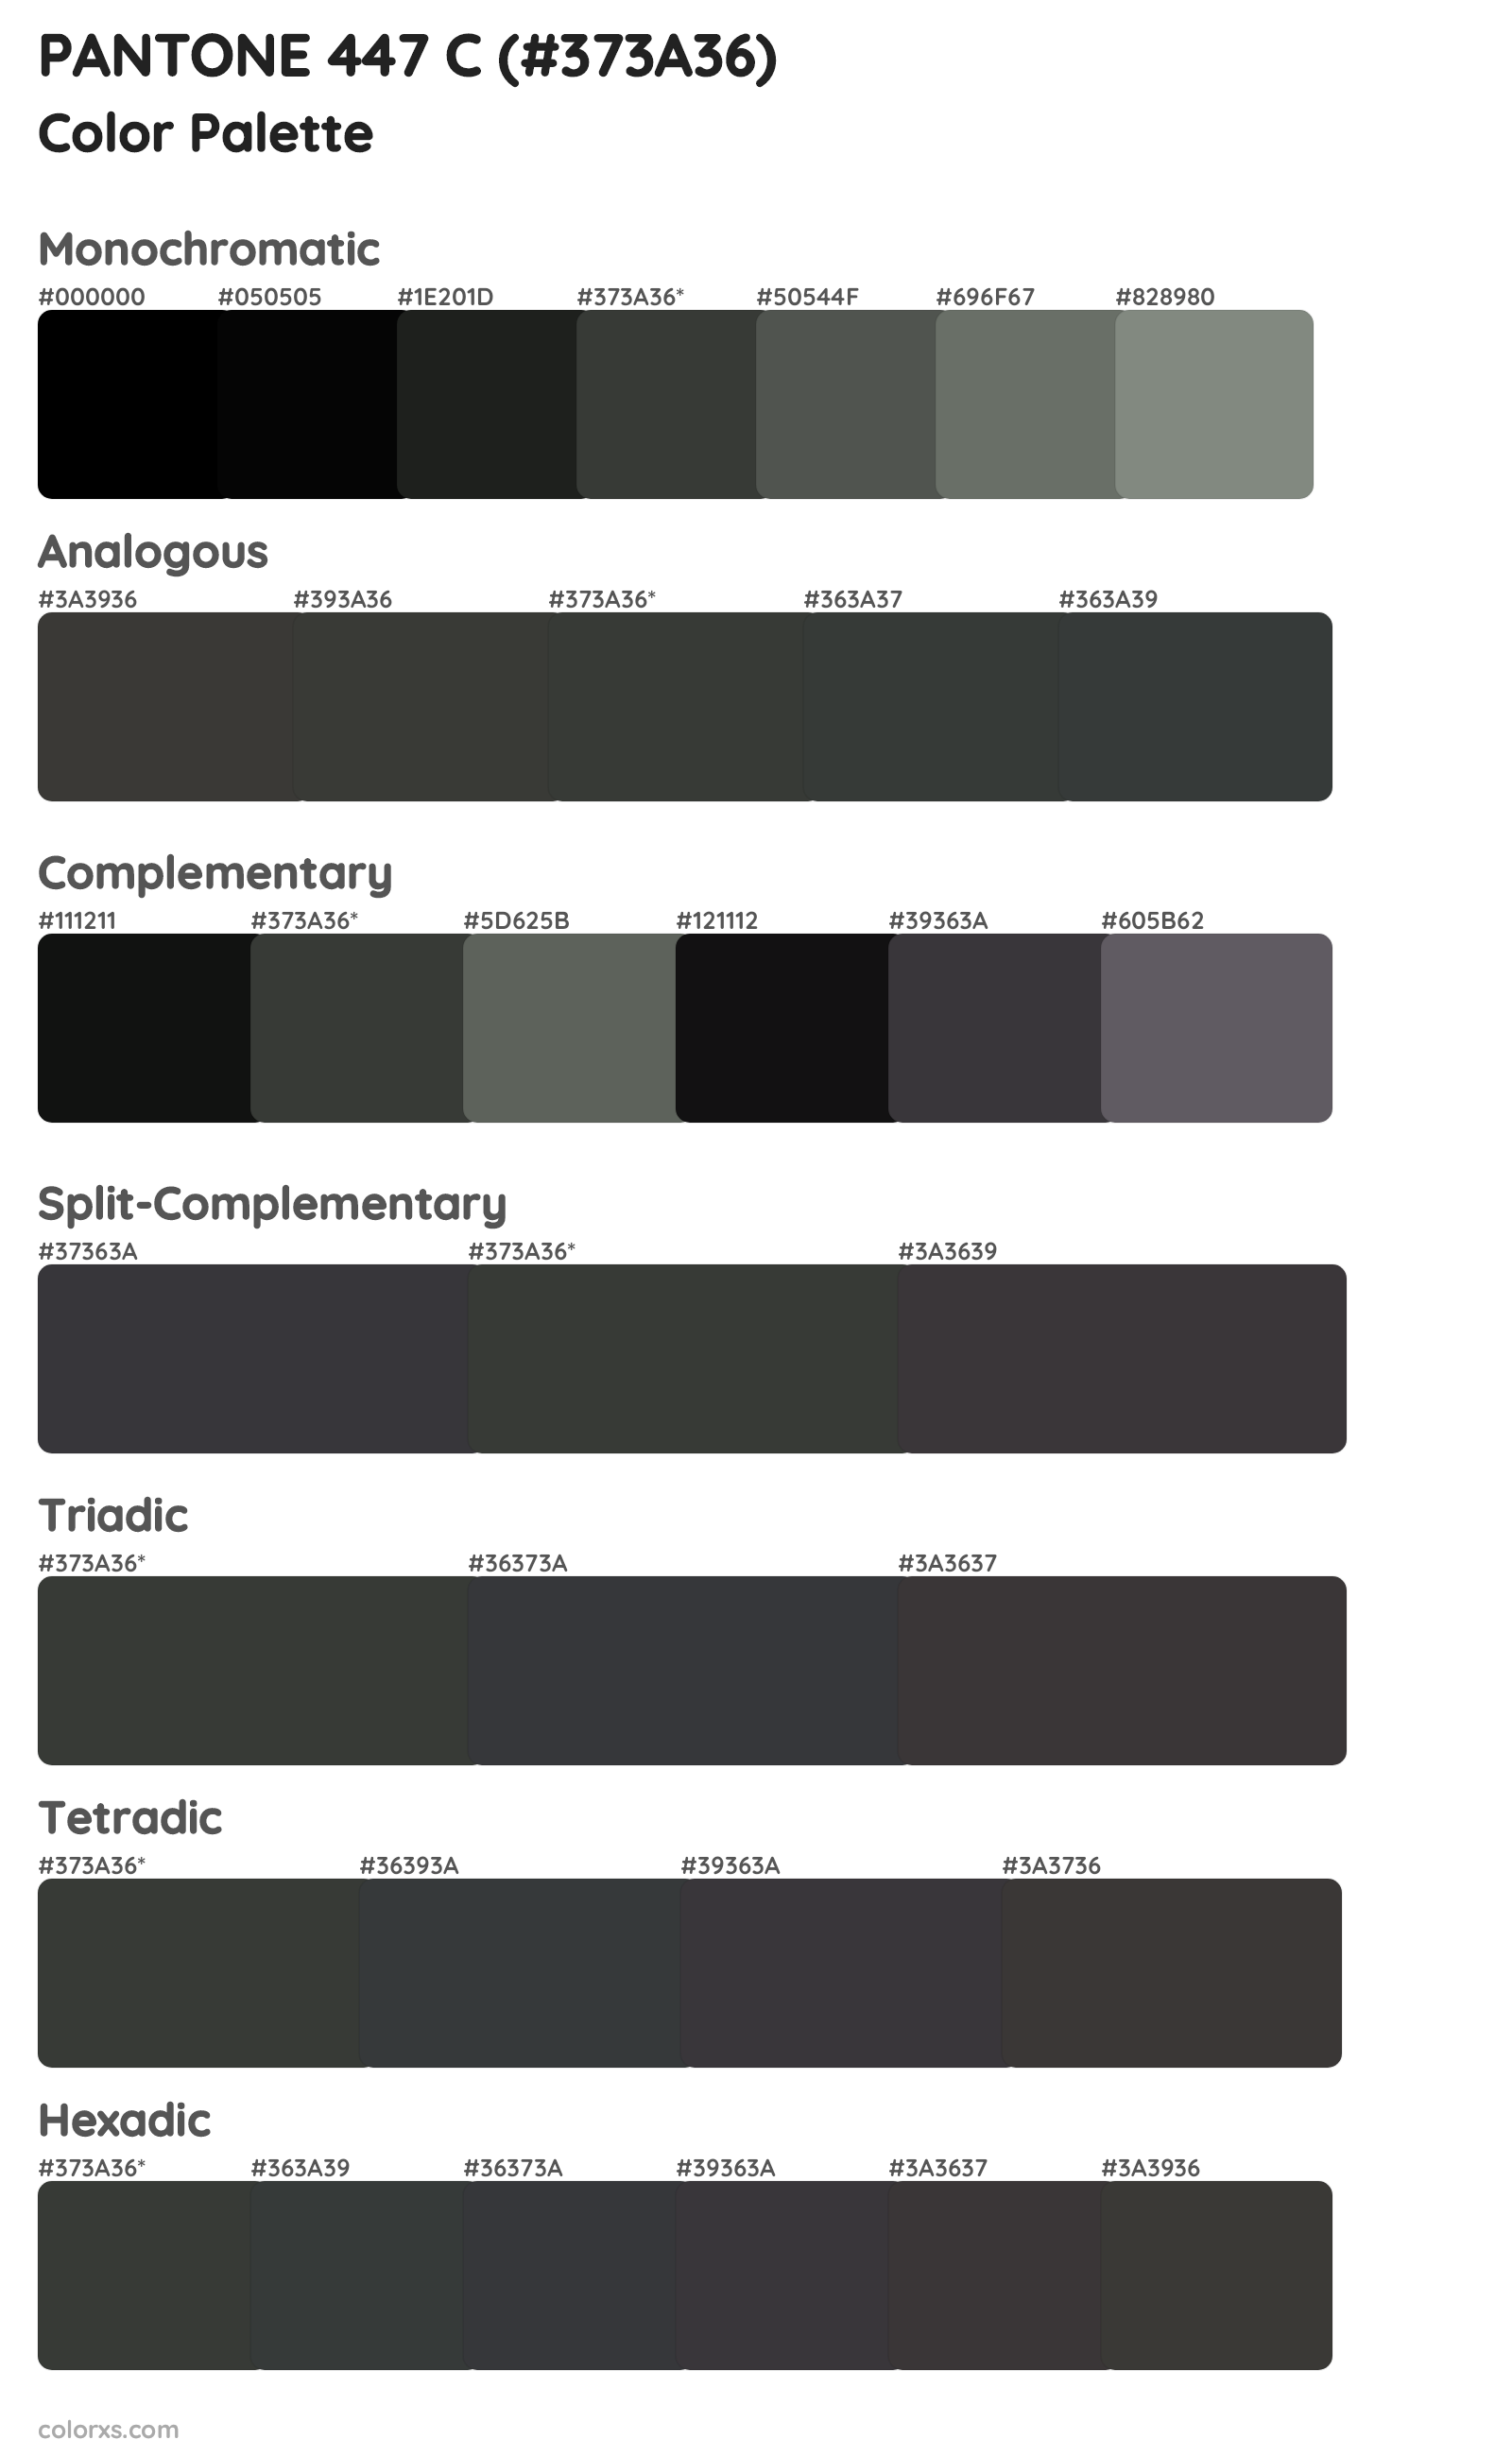 PANTONE 447 C Color Scheme Palettes